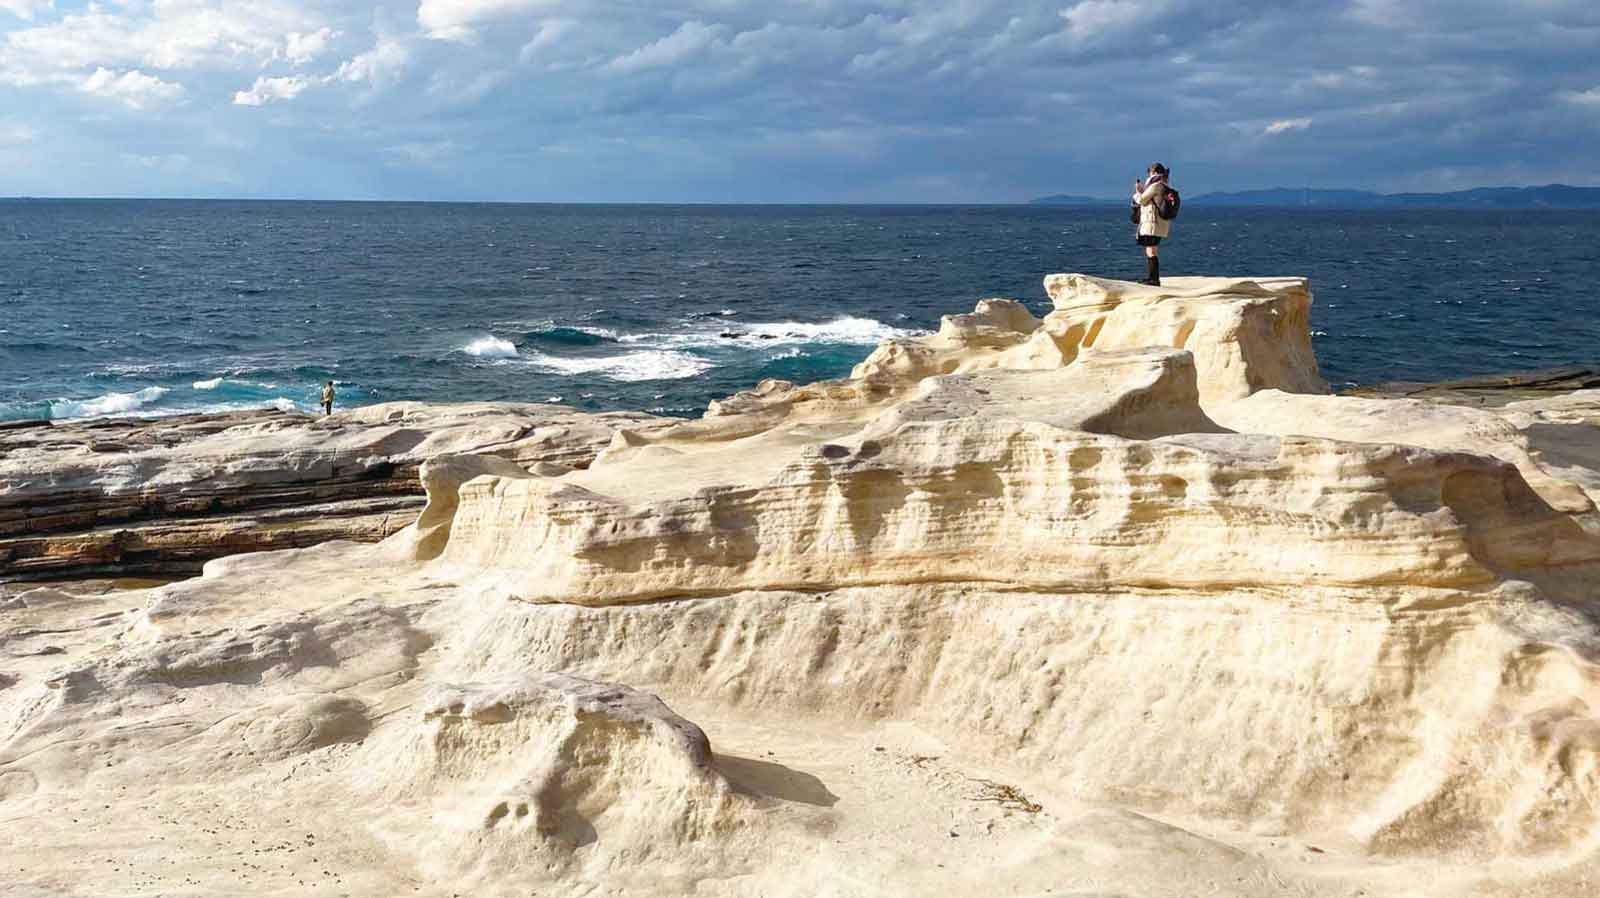 太平洋に面した砂岩の大型浸食が見られる